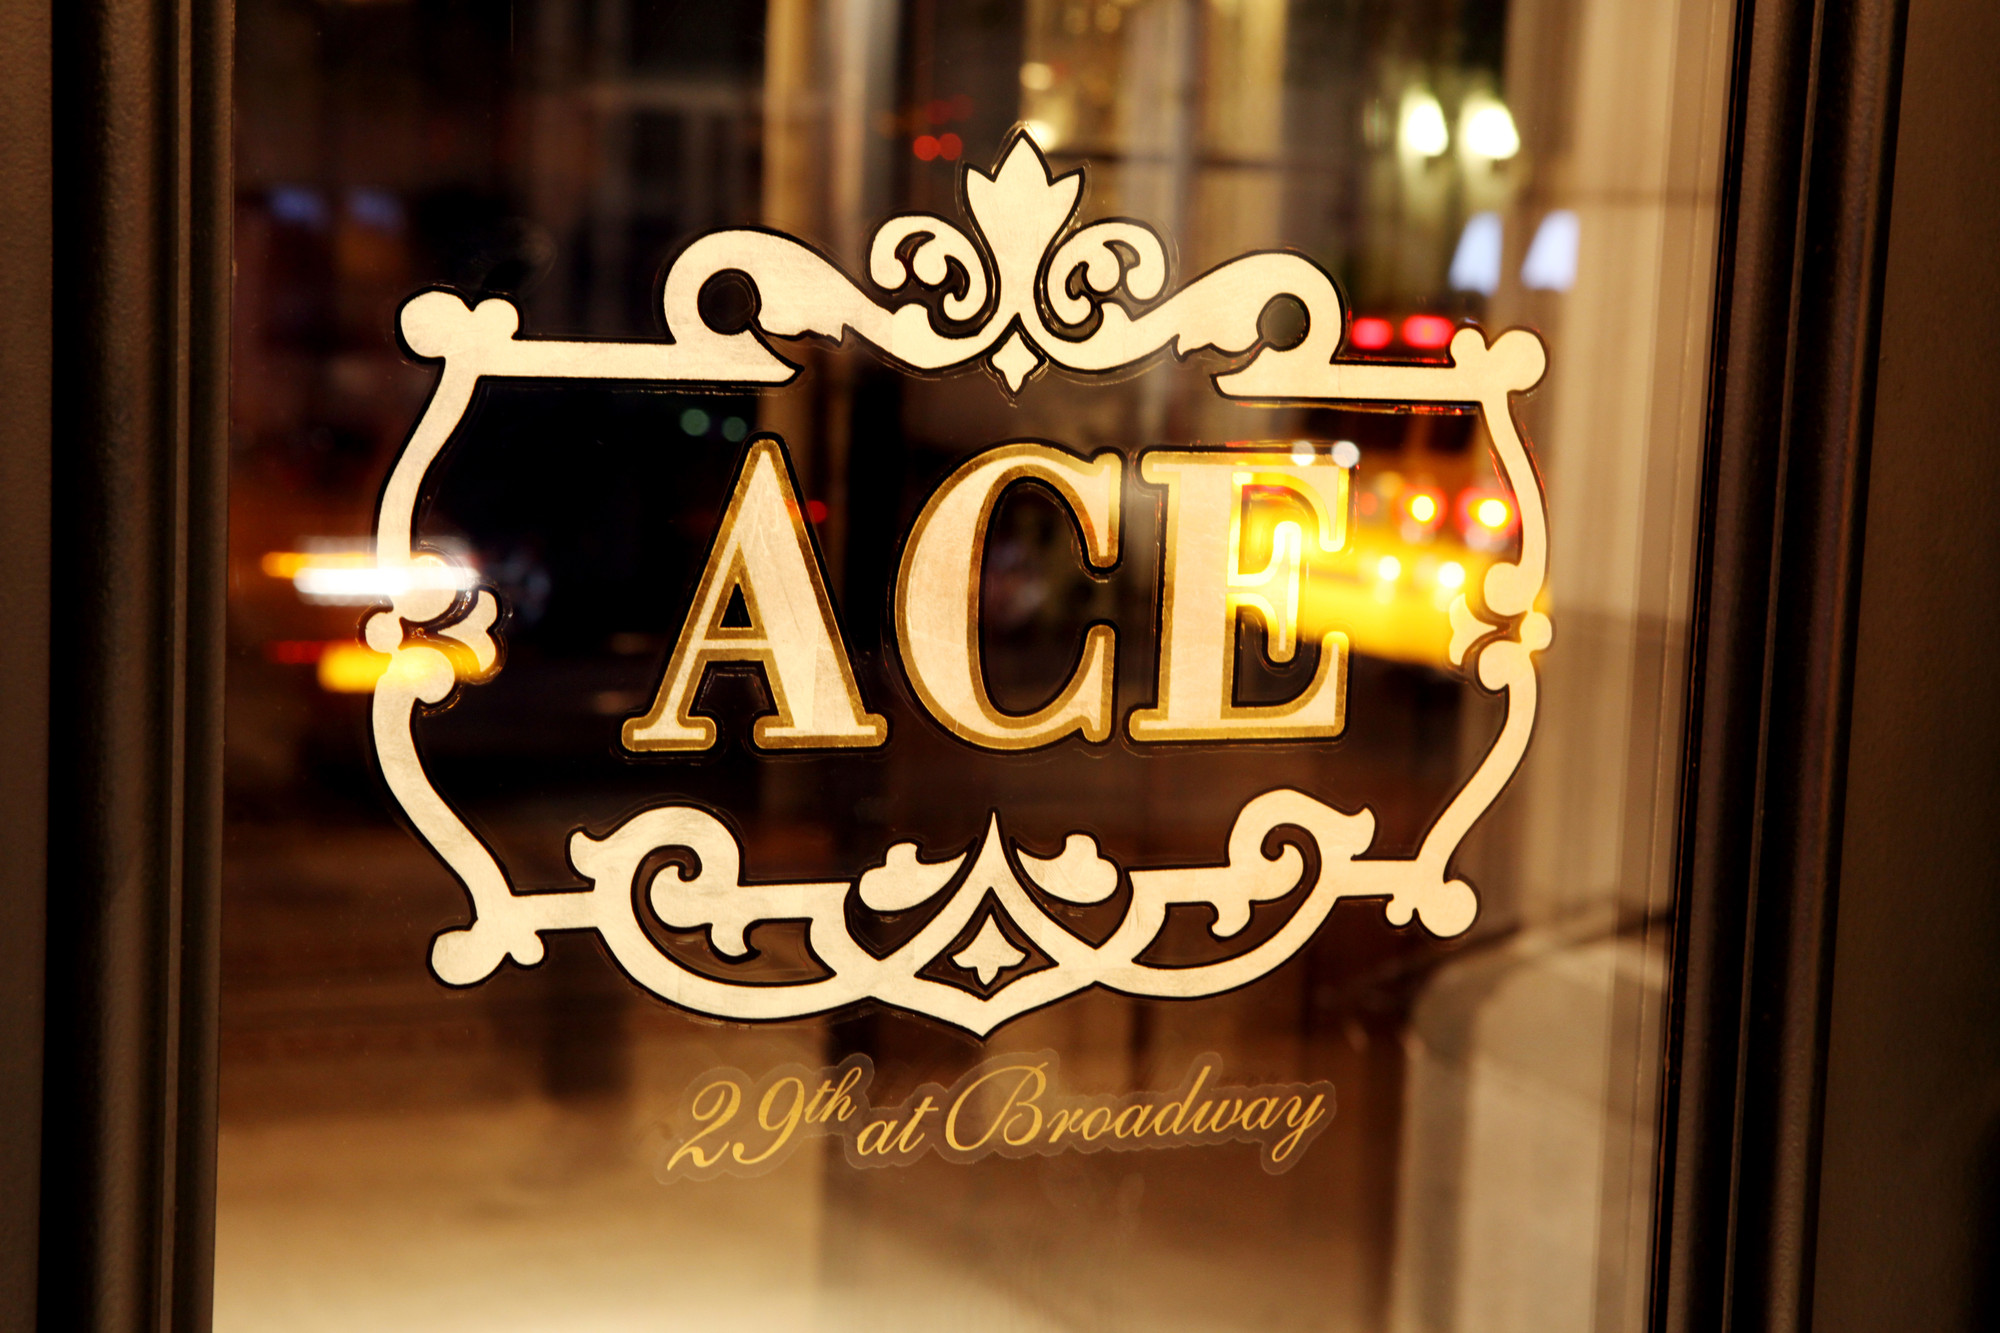 クリエイティブに生きたい貴方のためデザインホテル「ACE HOTEL New York」